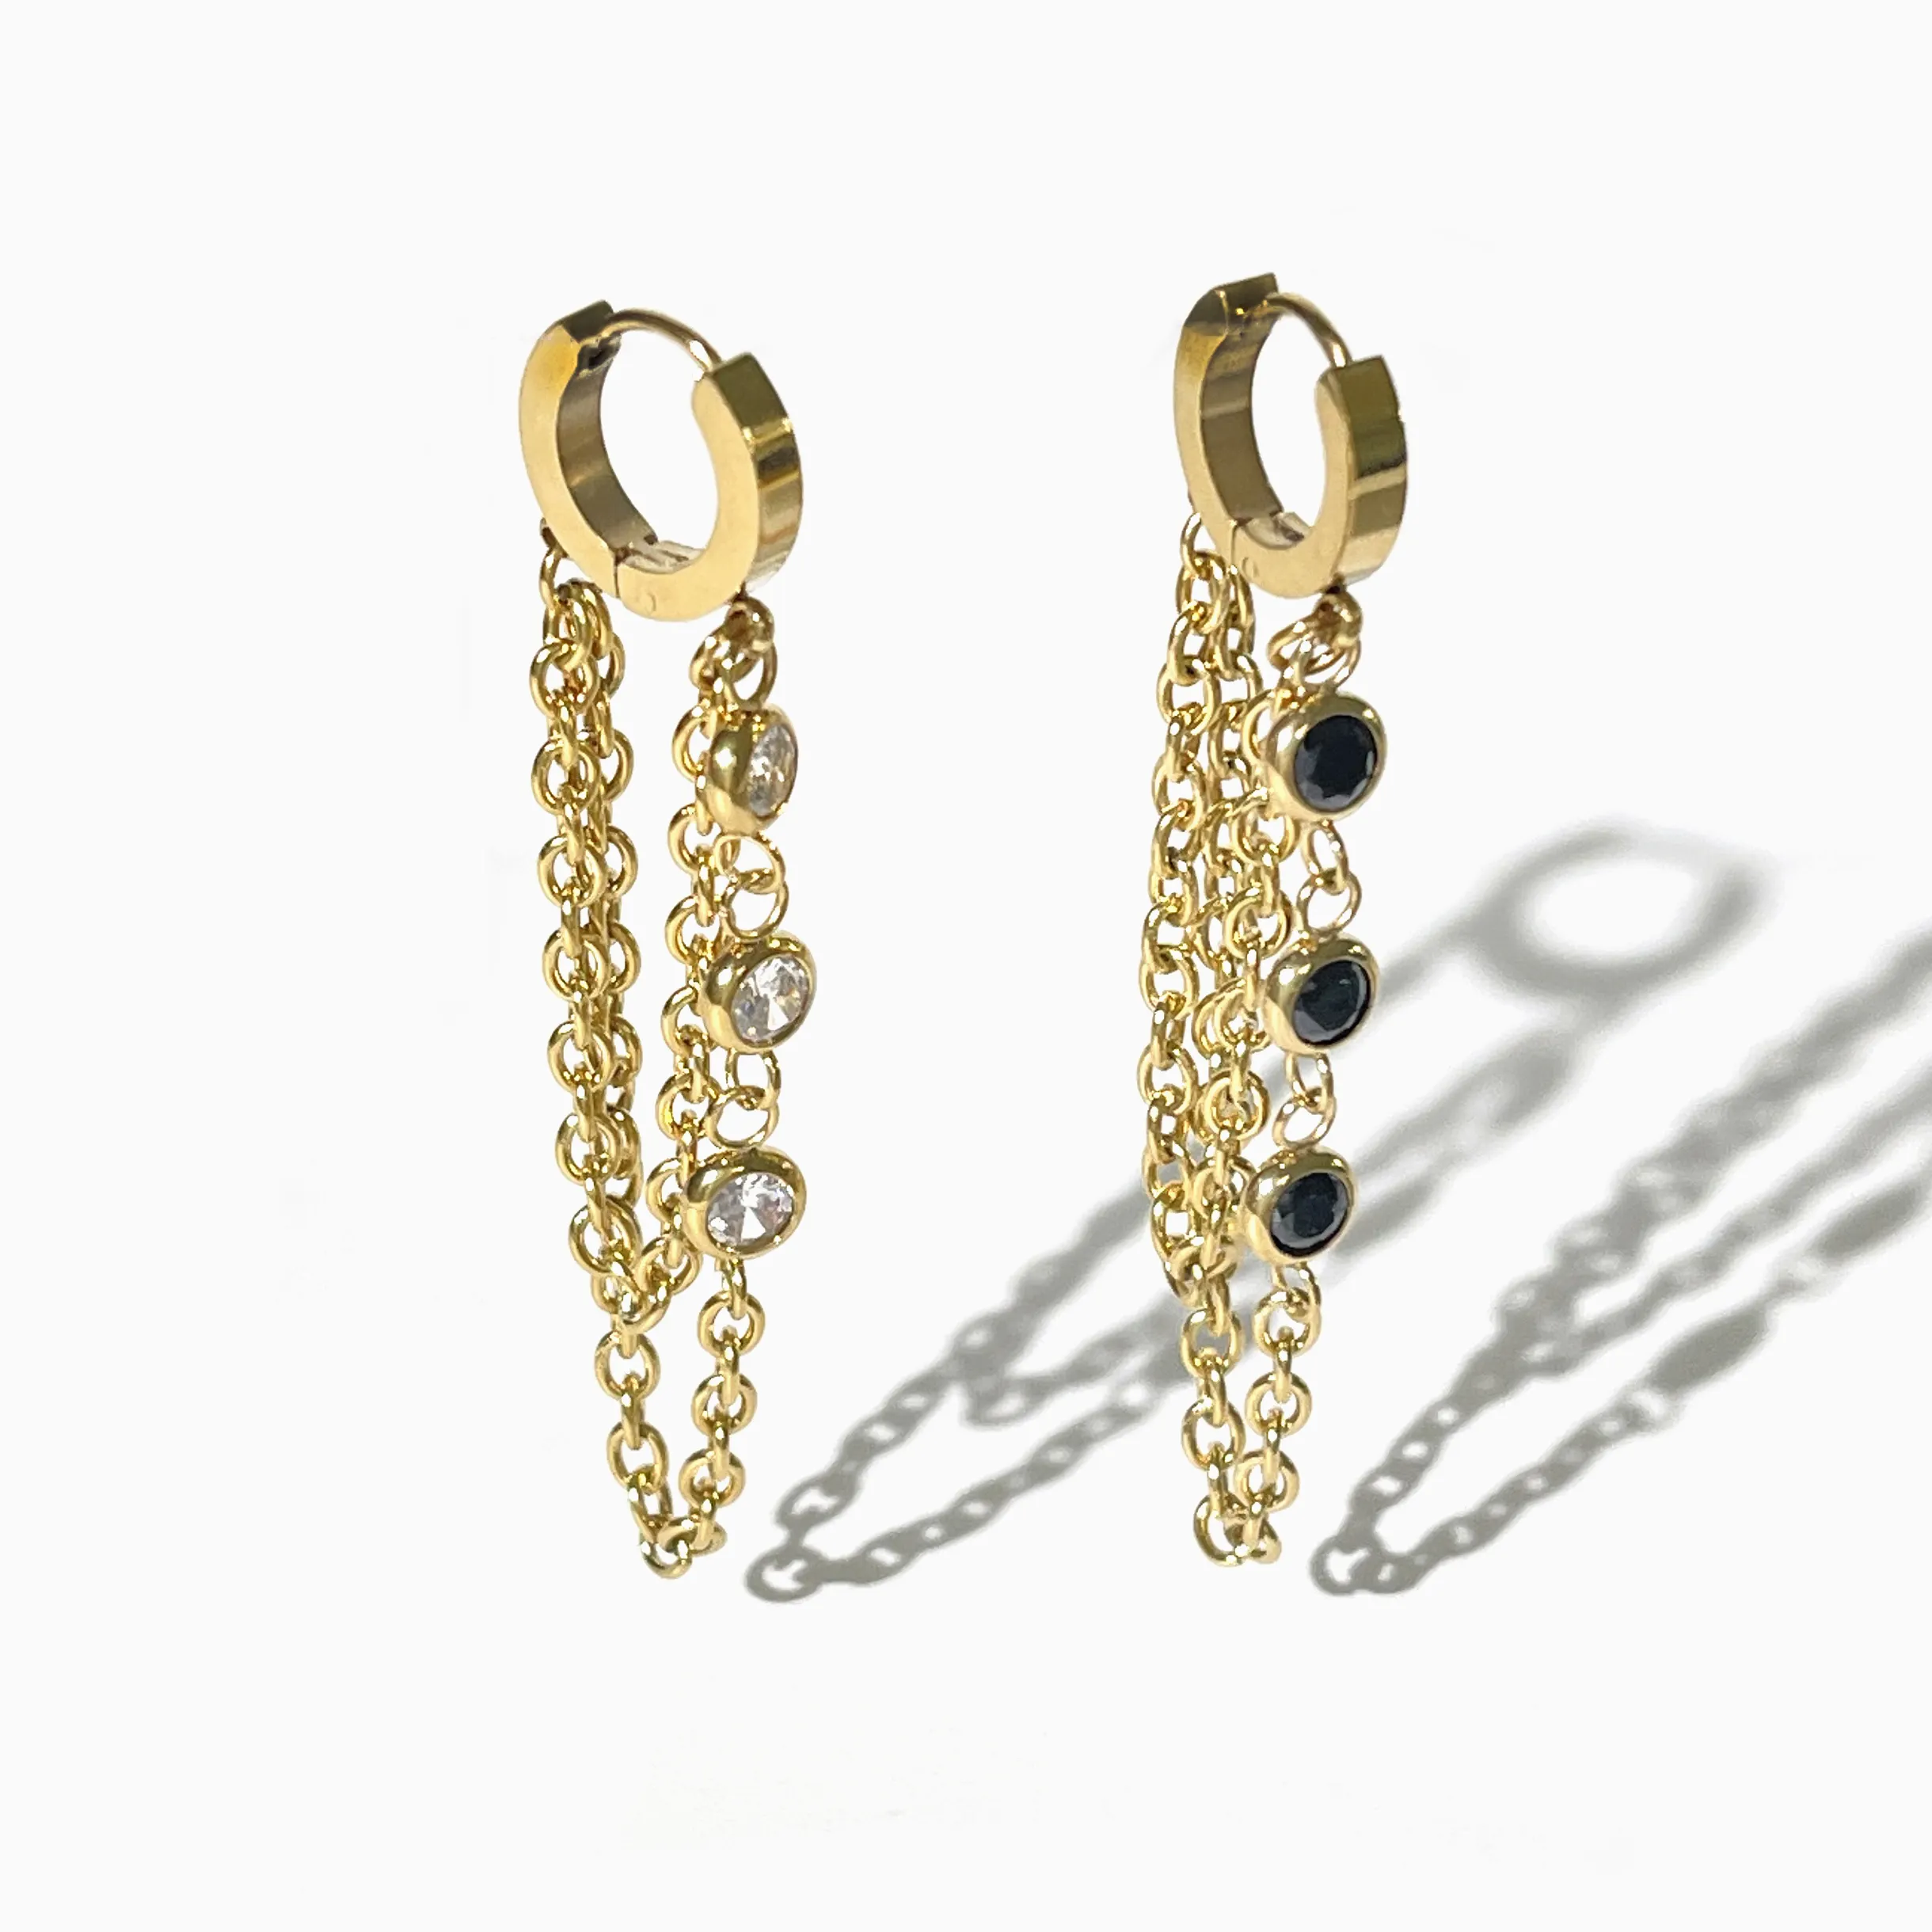 E0071 Stainless Steel Gold Plated Hoop with Long Double Chain Cz Zircon Earrings Women Dangle Tassel Huggie Earring Jewelry